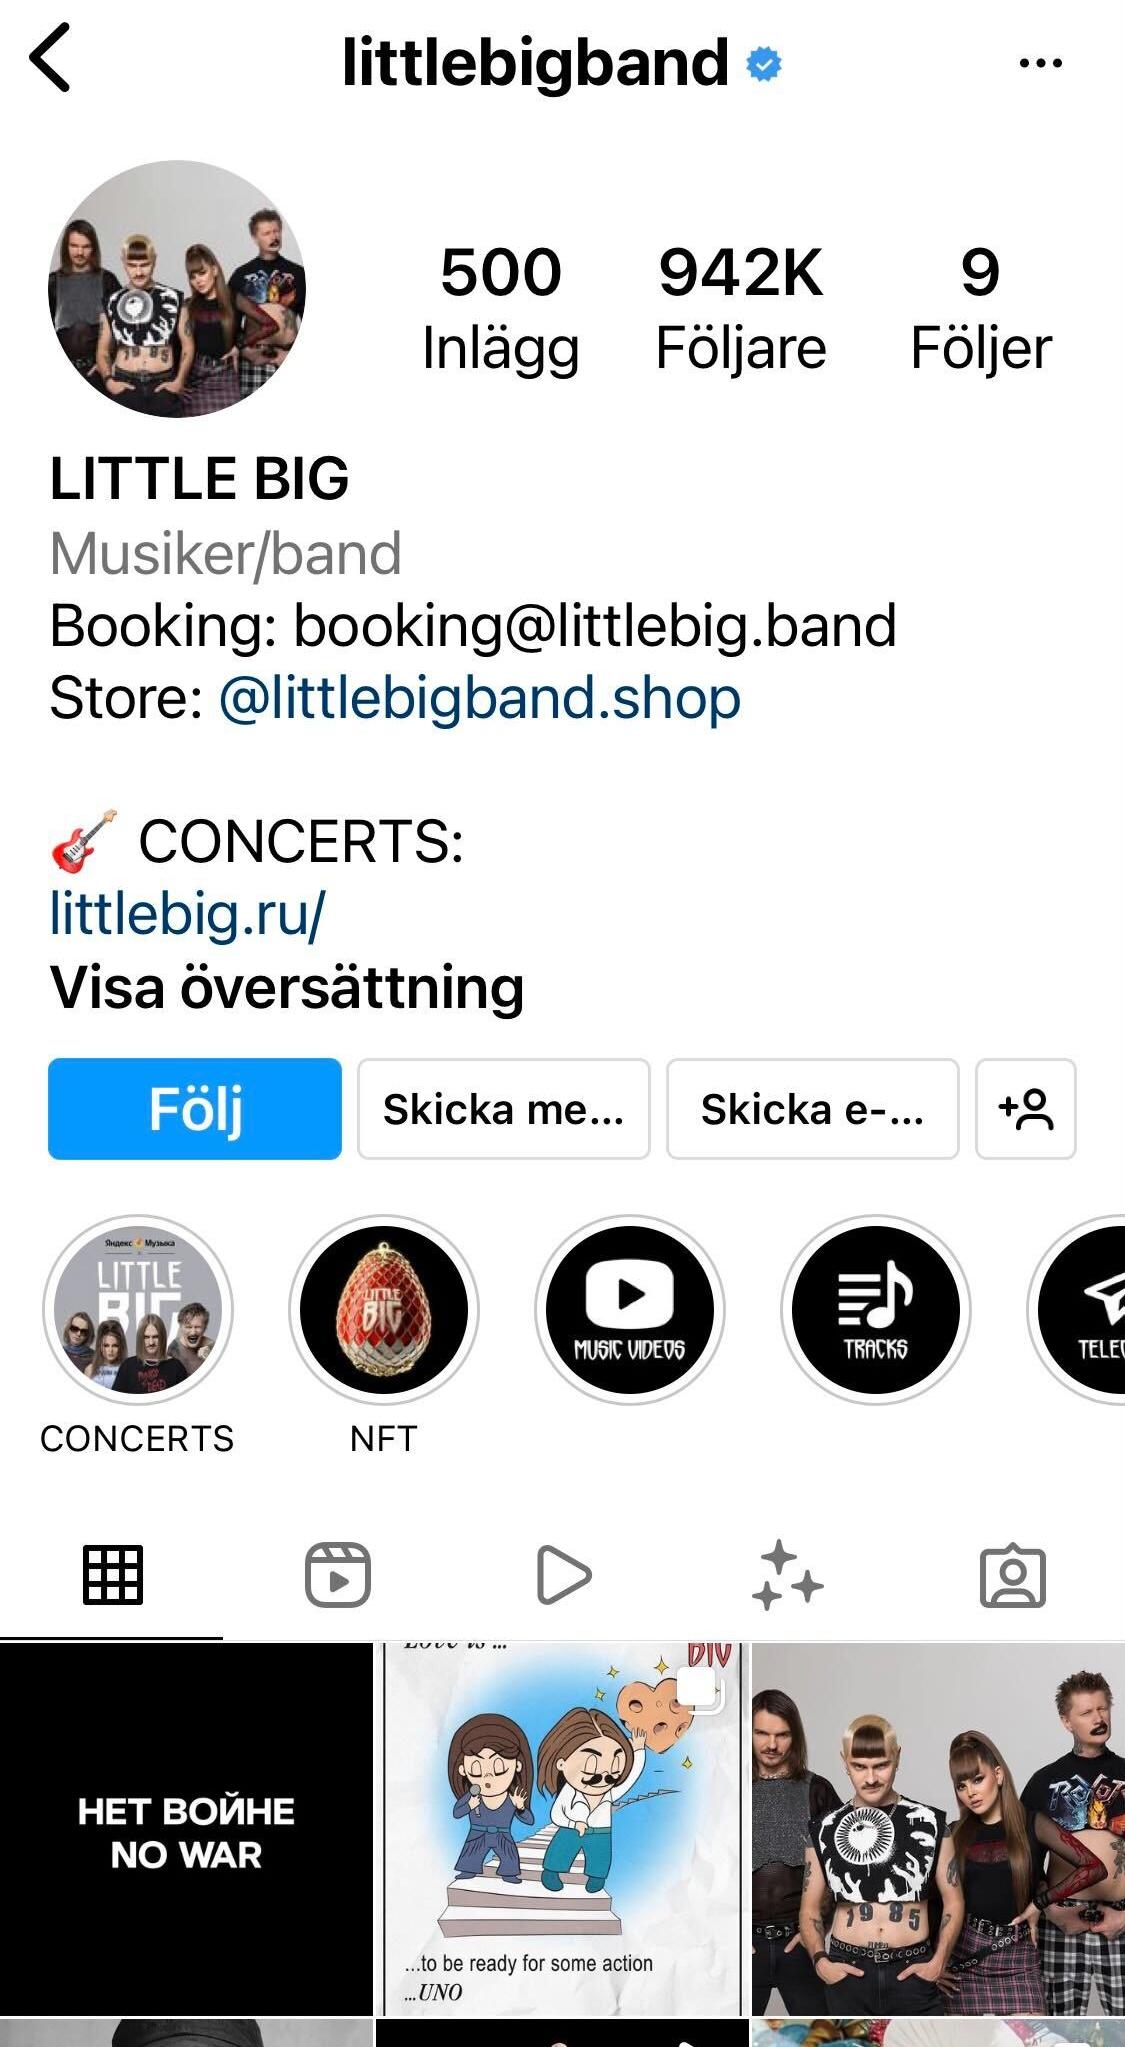 ”No war”-protesten fanns på Little Bigs Instagramkonto även för en vecka sedan, men sedan dess har allt annat innehåll rensats från kontot.